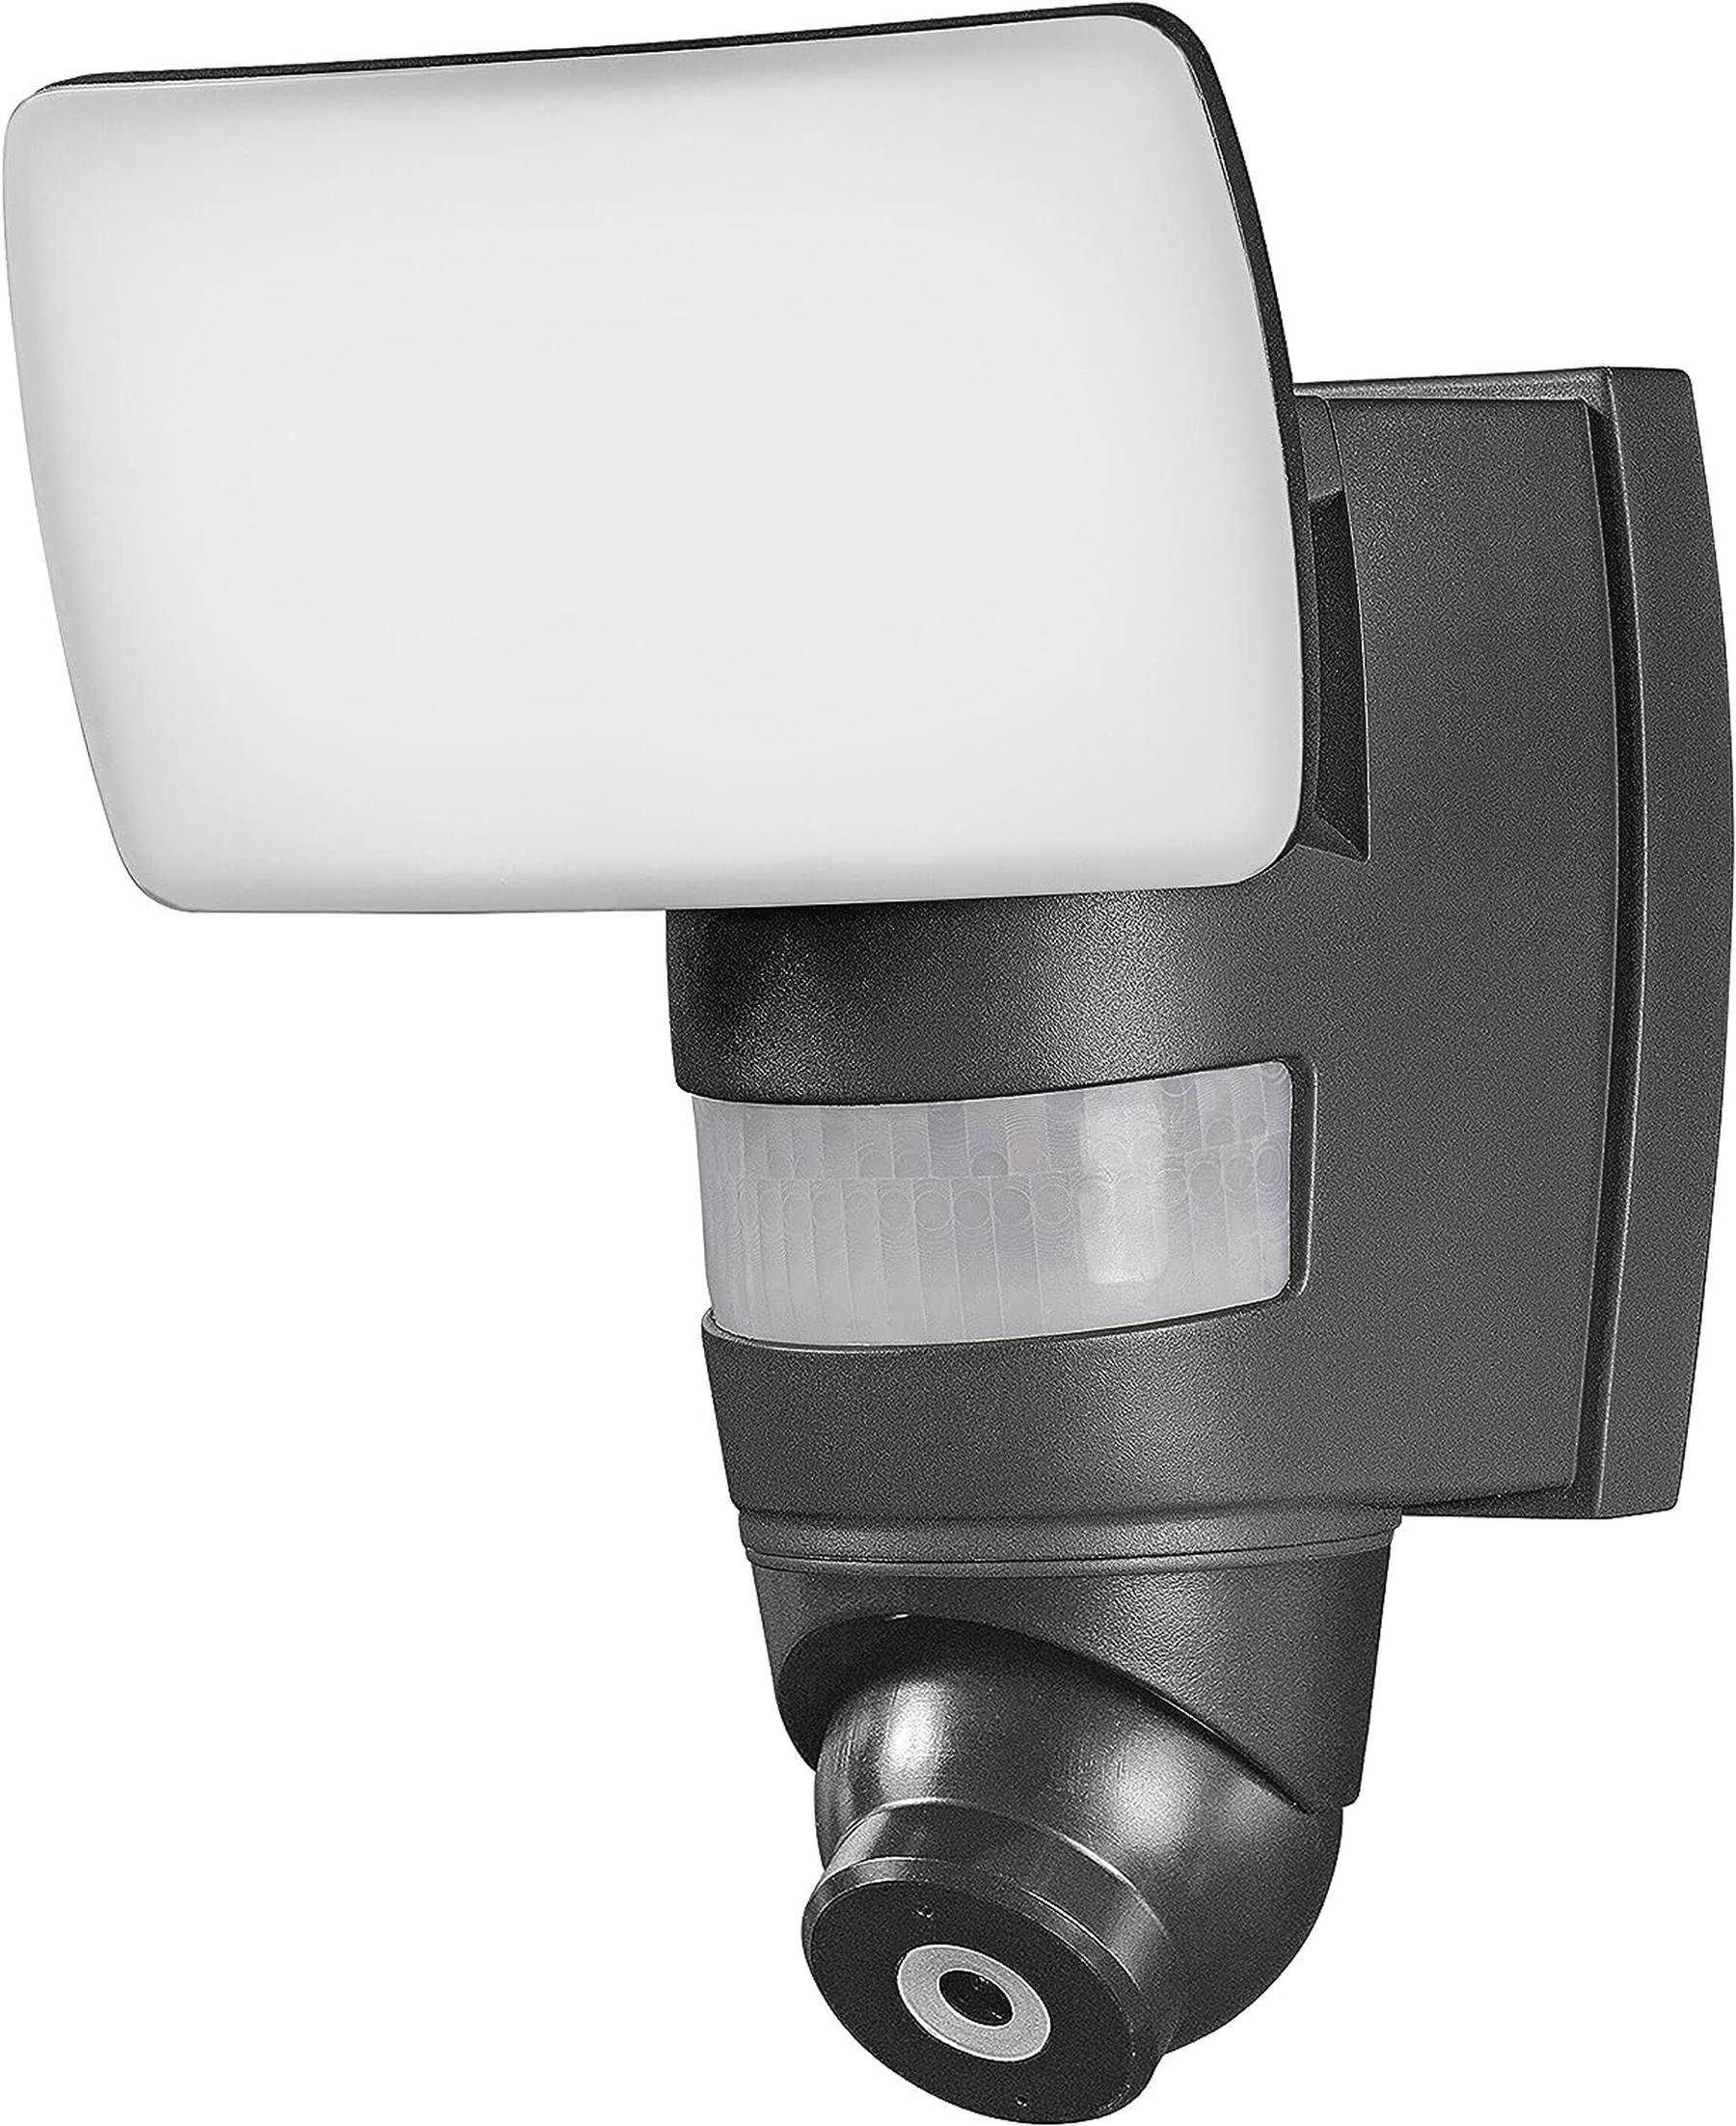 Ledvance Tageslichtlampe LEDVANCE Smarte Security LED Leuchte mit integrierter Kamera, Flutstra, warmweiss, dimmbar | Tageslichtlampen